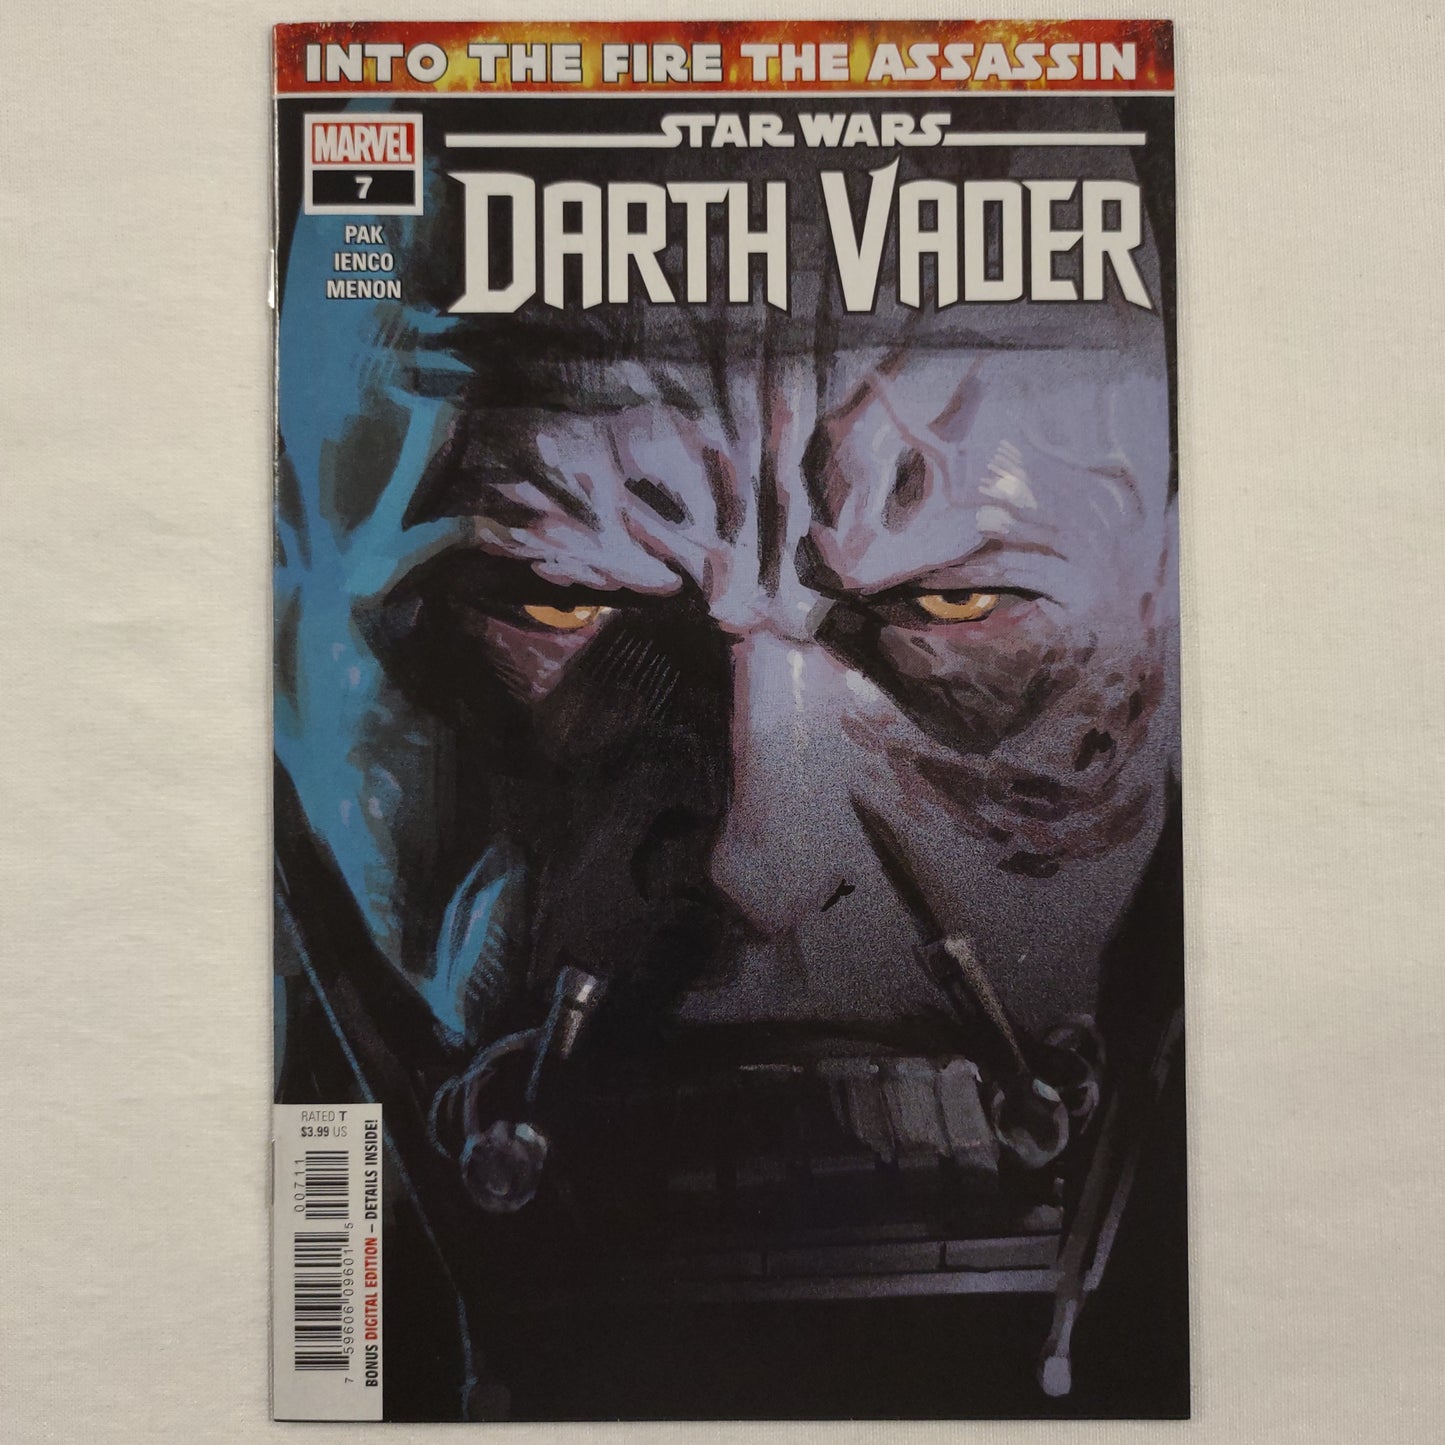 Darth Vader #7